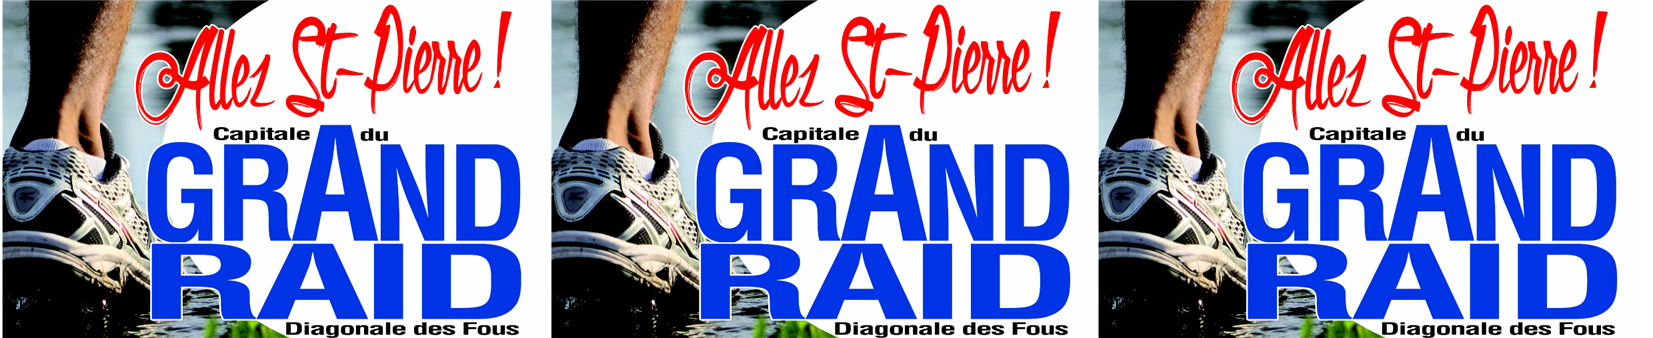 Diagonale des Fous<br>Saint-Pierre capitale du Grand Raid